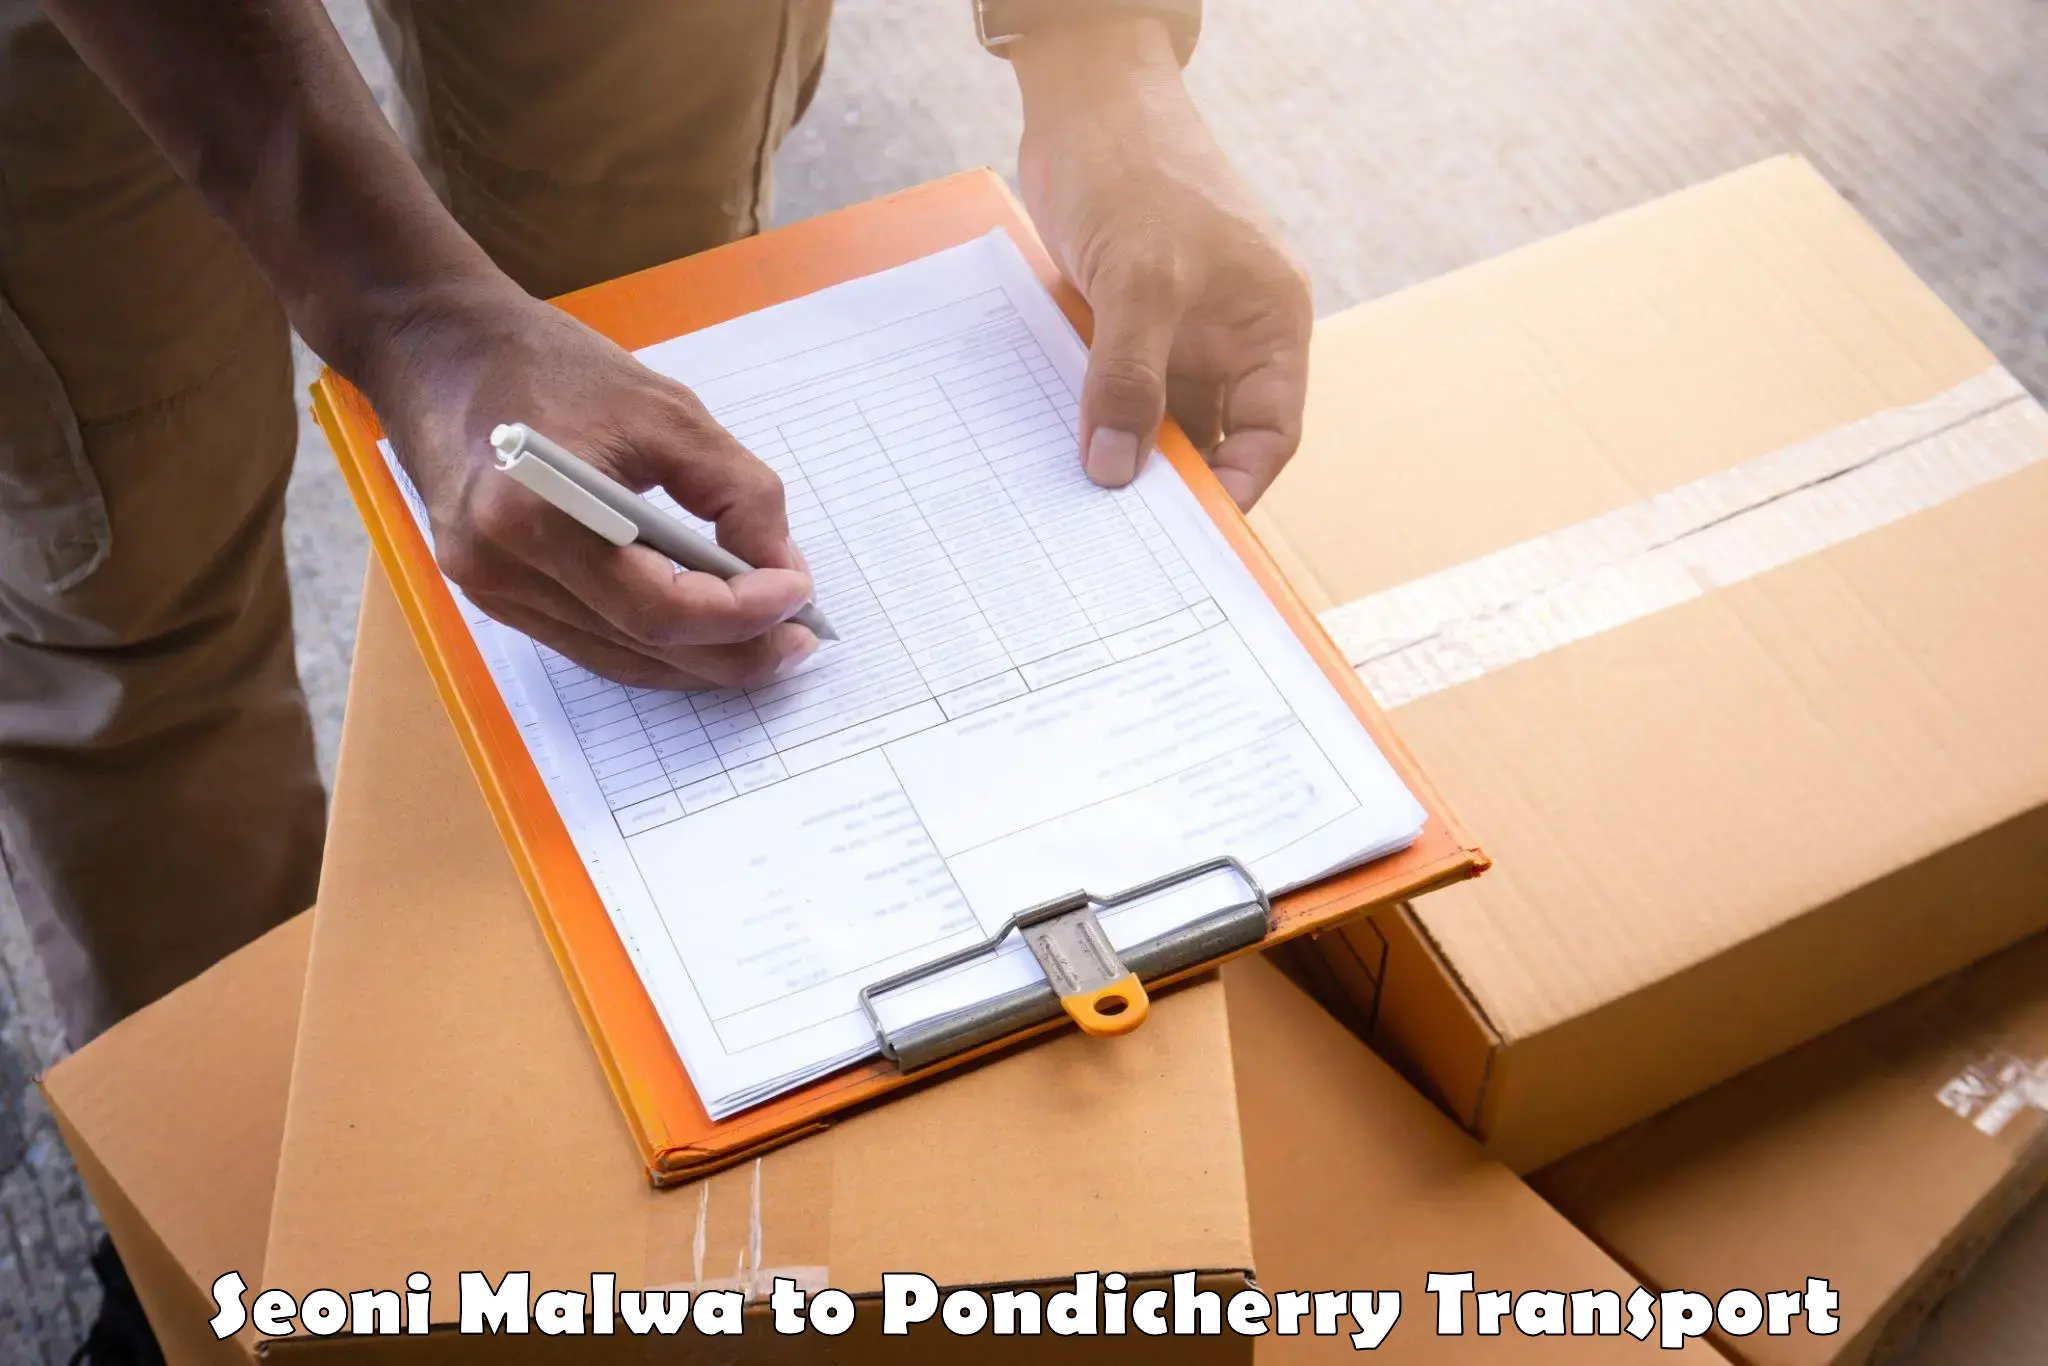 Nationwide transport services Seoni Malwa to Metttupalayam